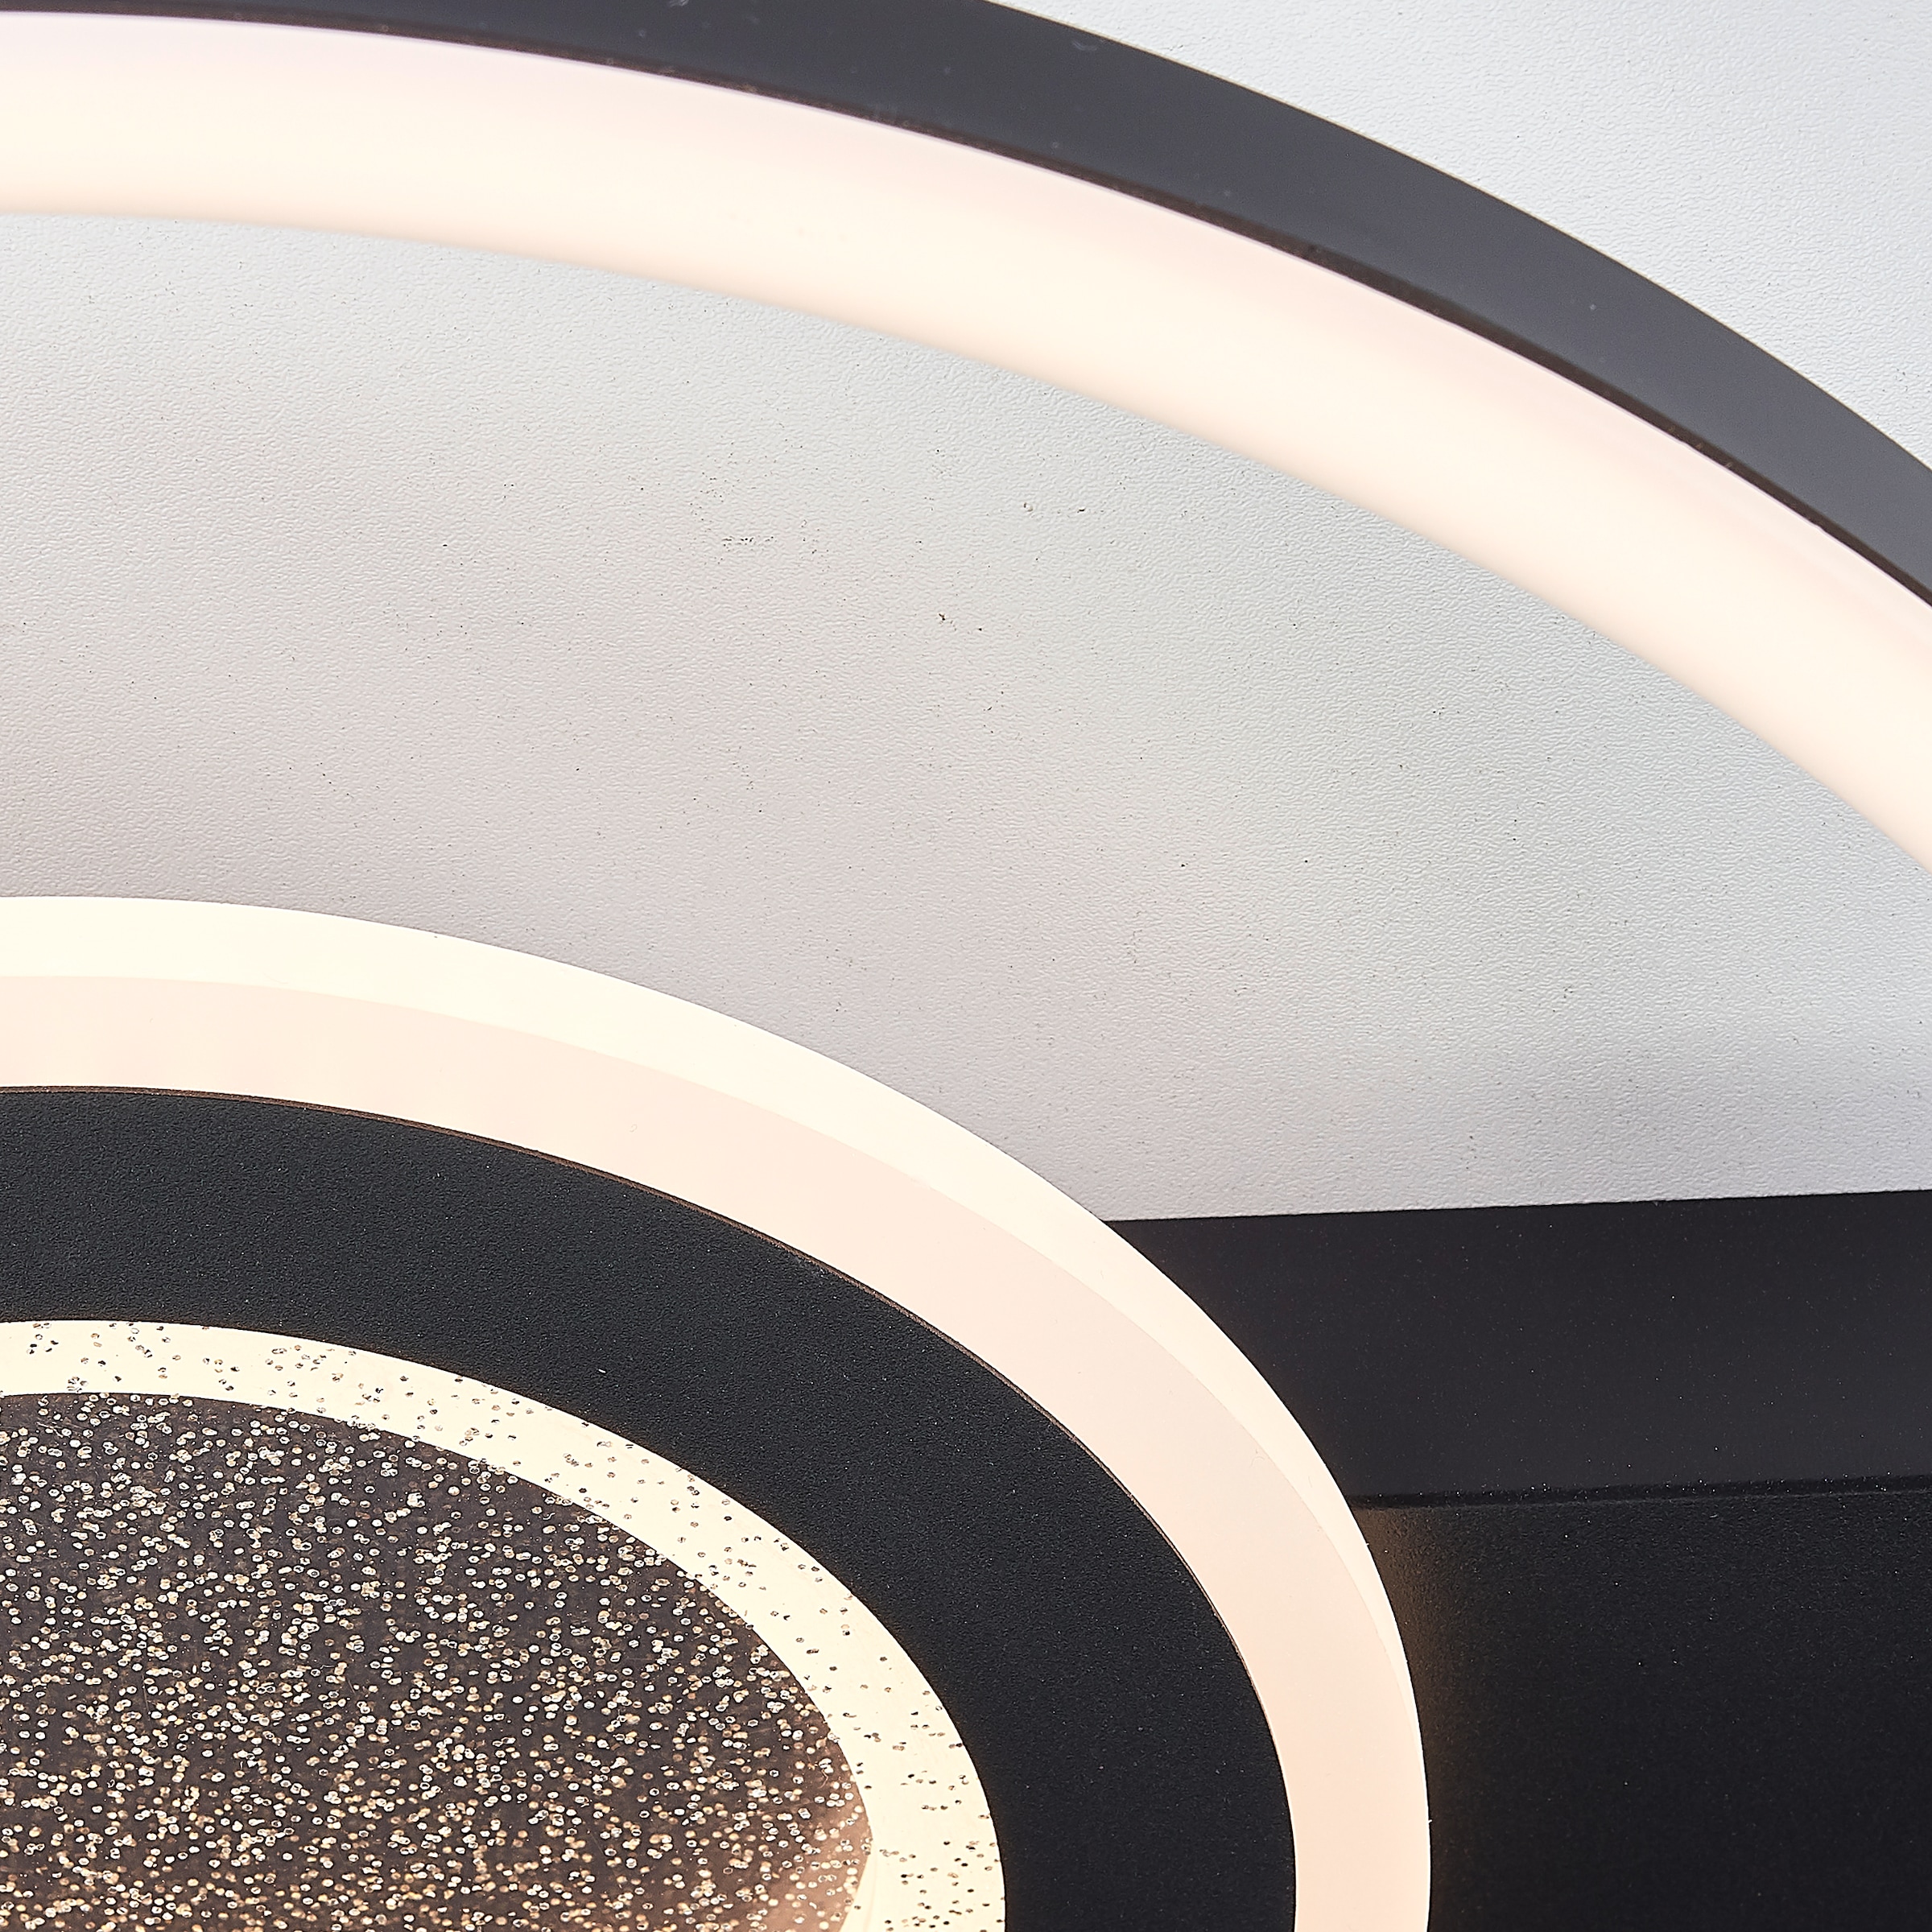 BreLight LED Deckenleuchte »Queens«, 37 x 37 cm, 2400 lm, 3000 K, Glitzereffekt, schwarz